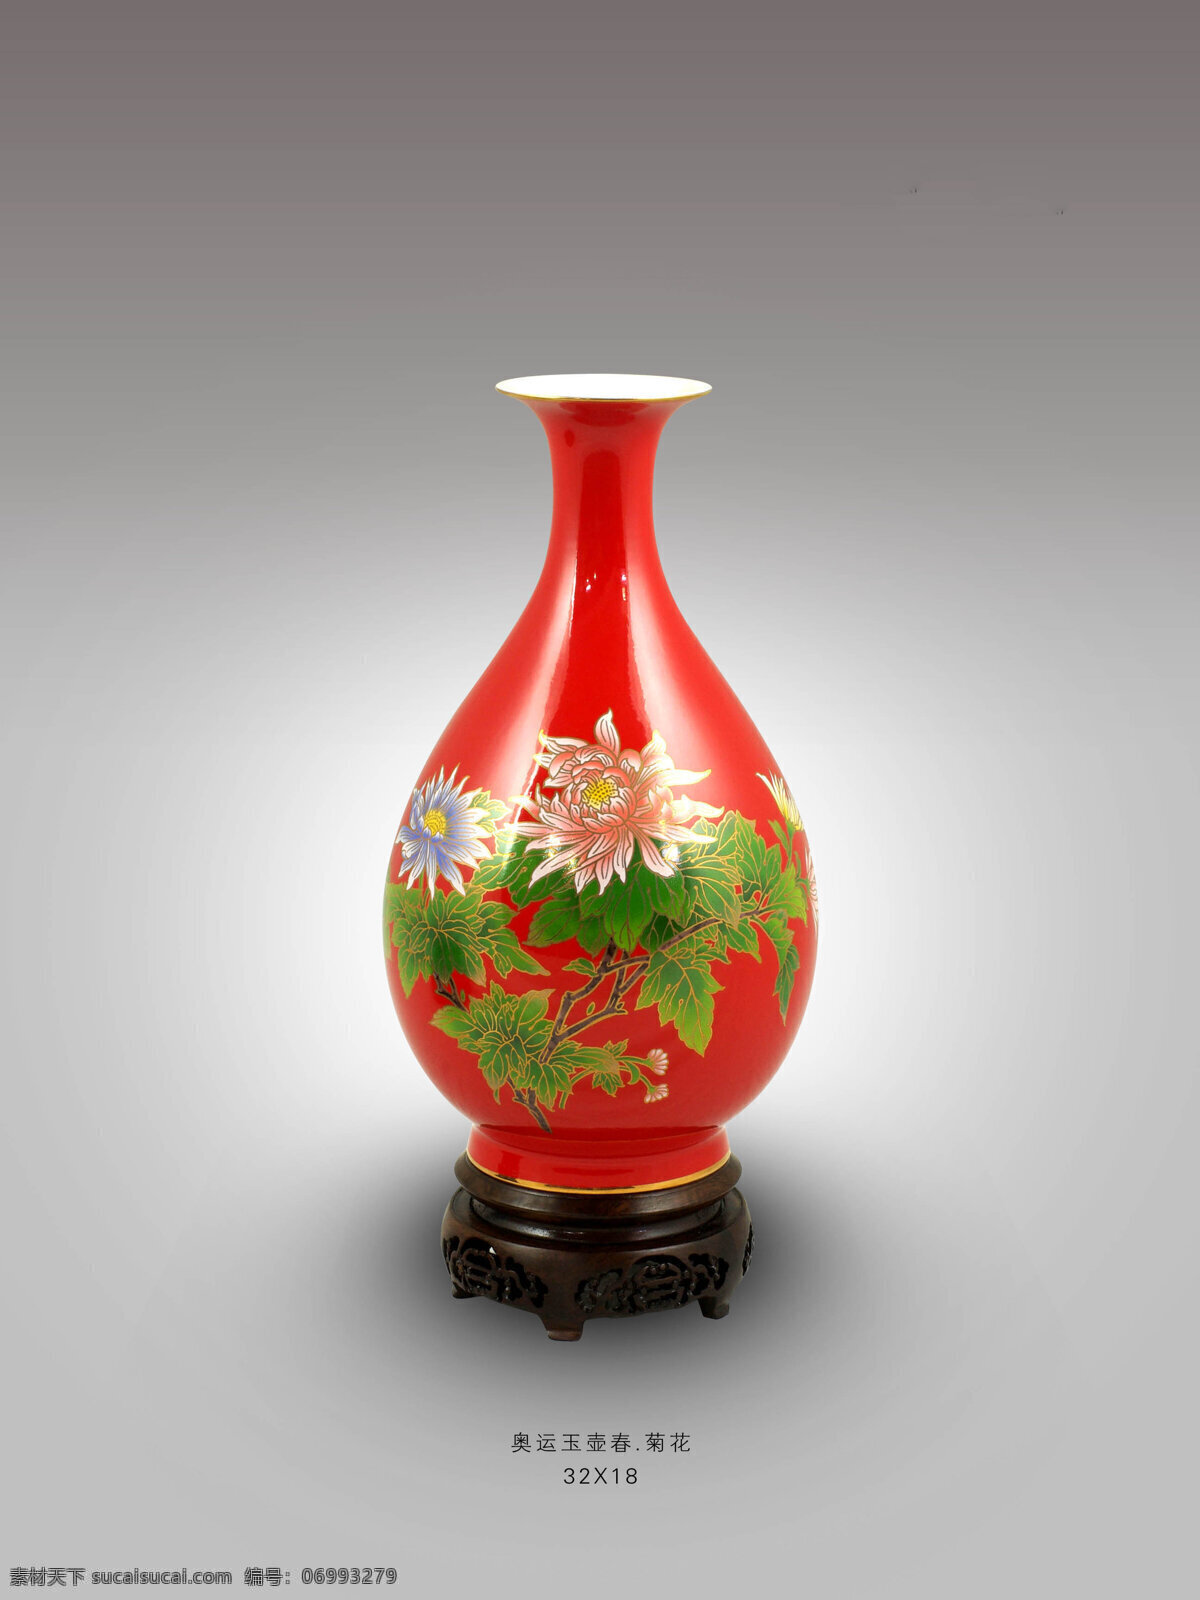 红瓷花瓶系列 红瓷 花瓶 礼品 定制 厂家 湖南醴陵 祥龙窑 文化艺术